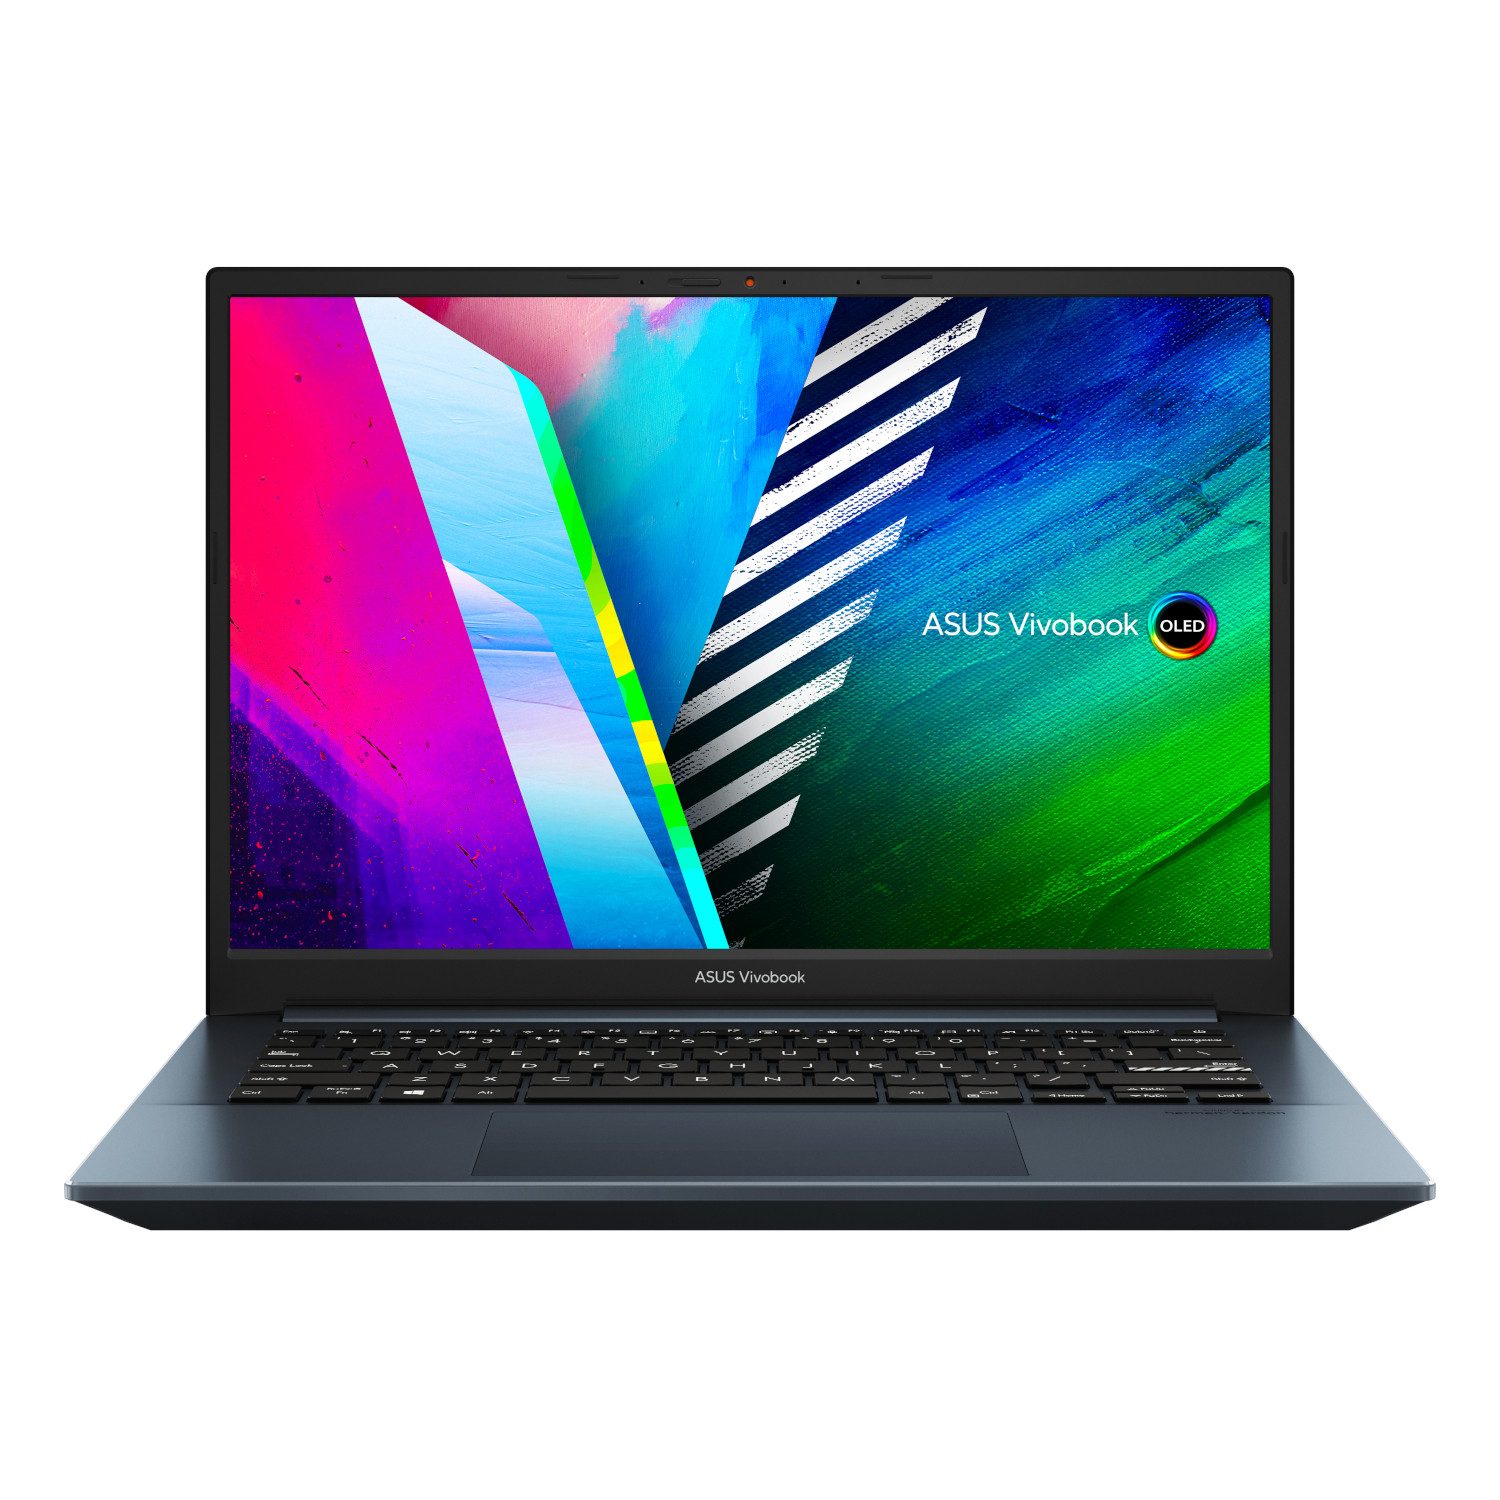 Asus Vivobook Pro 14, fertig eingerichtetes Business-Notebook (35,56 cm/14 Zoll, AMD Ryzen 5 5600H, Radeon™ RX Vega 7, 500 GB SSD, #mit Funkmaus +Notebooktasche)